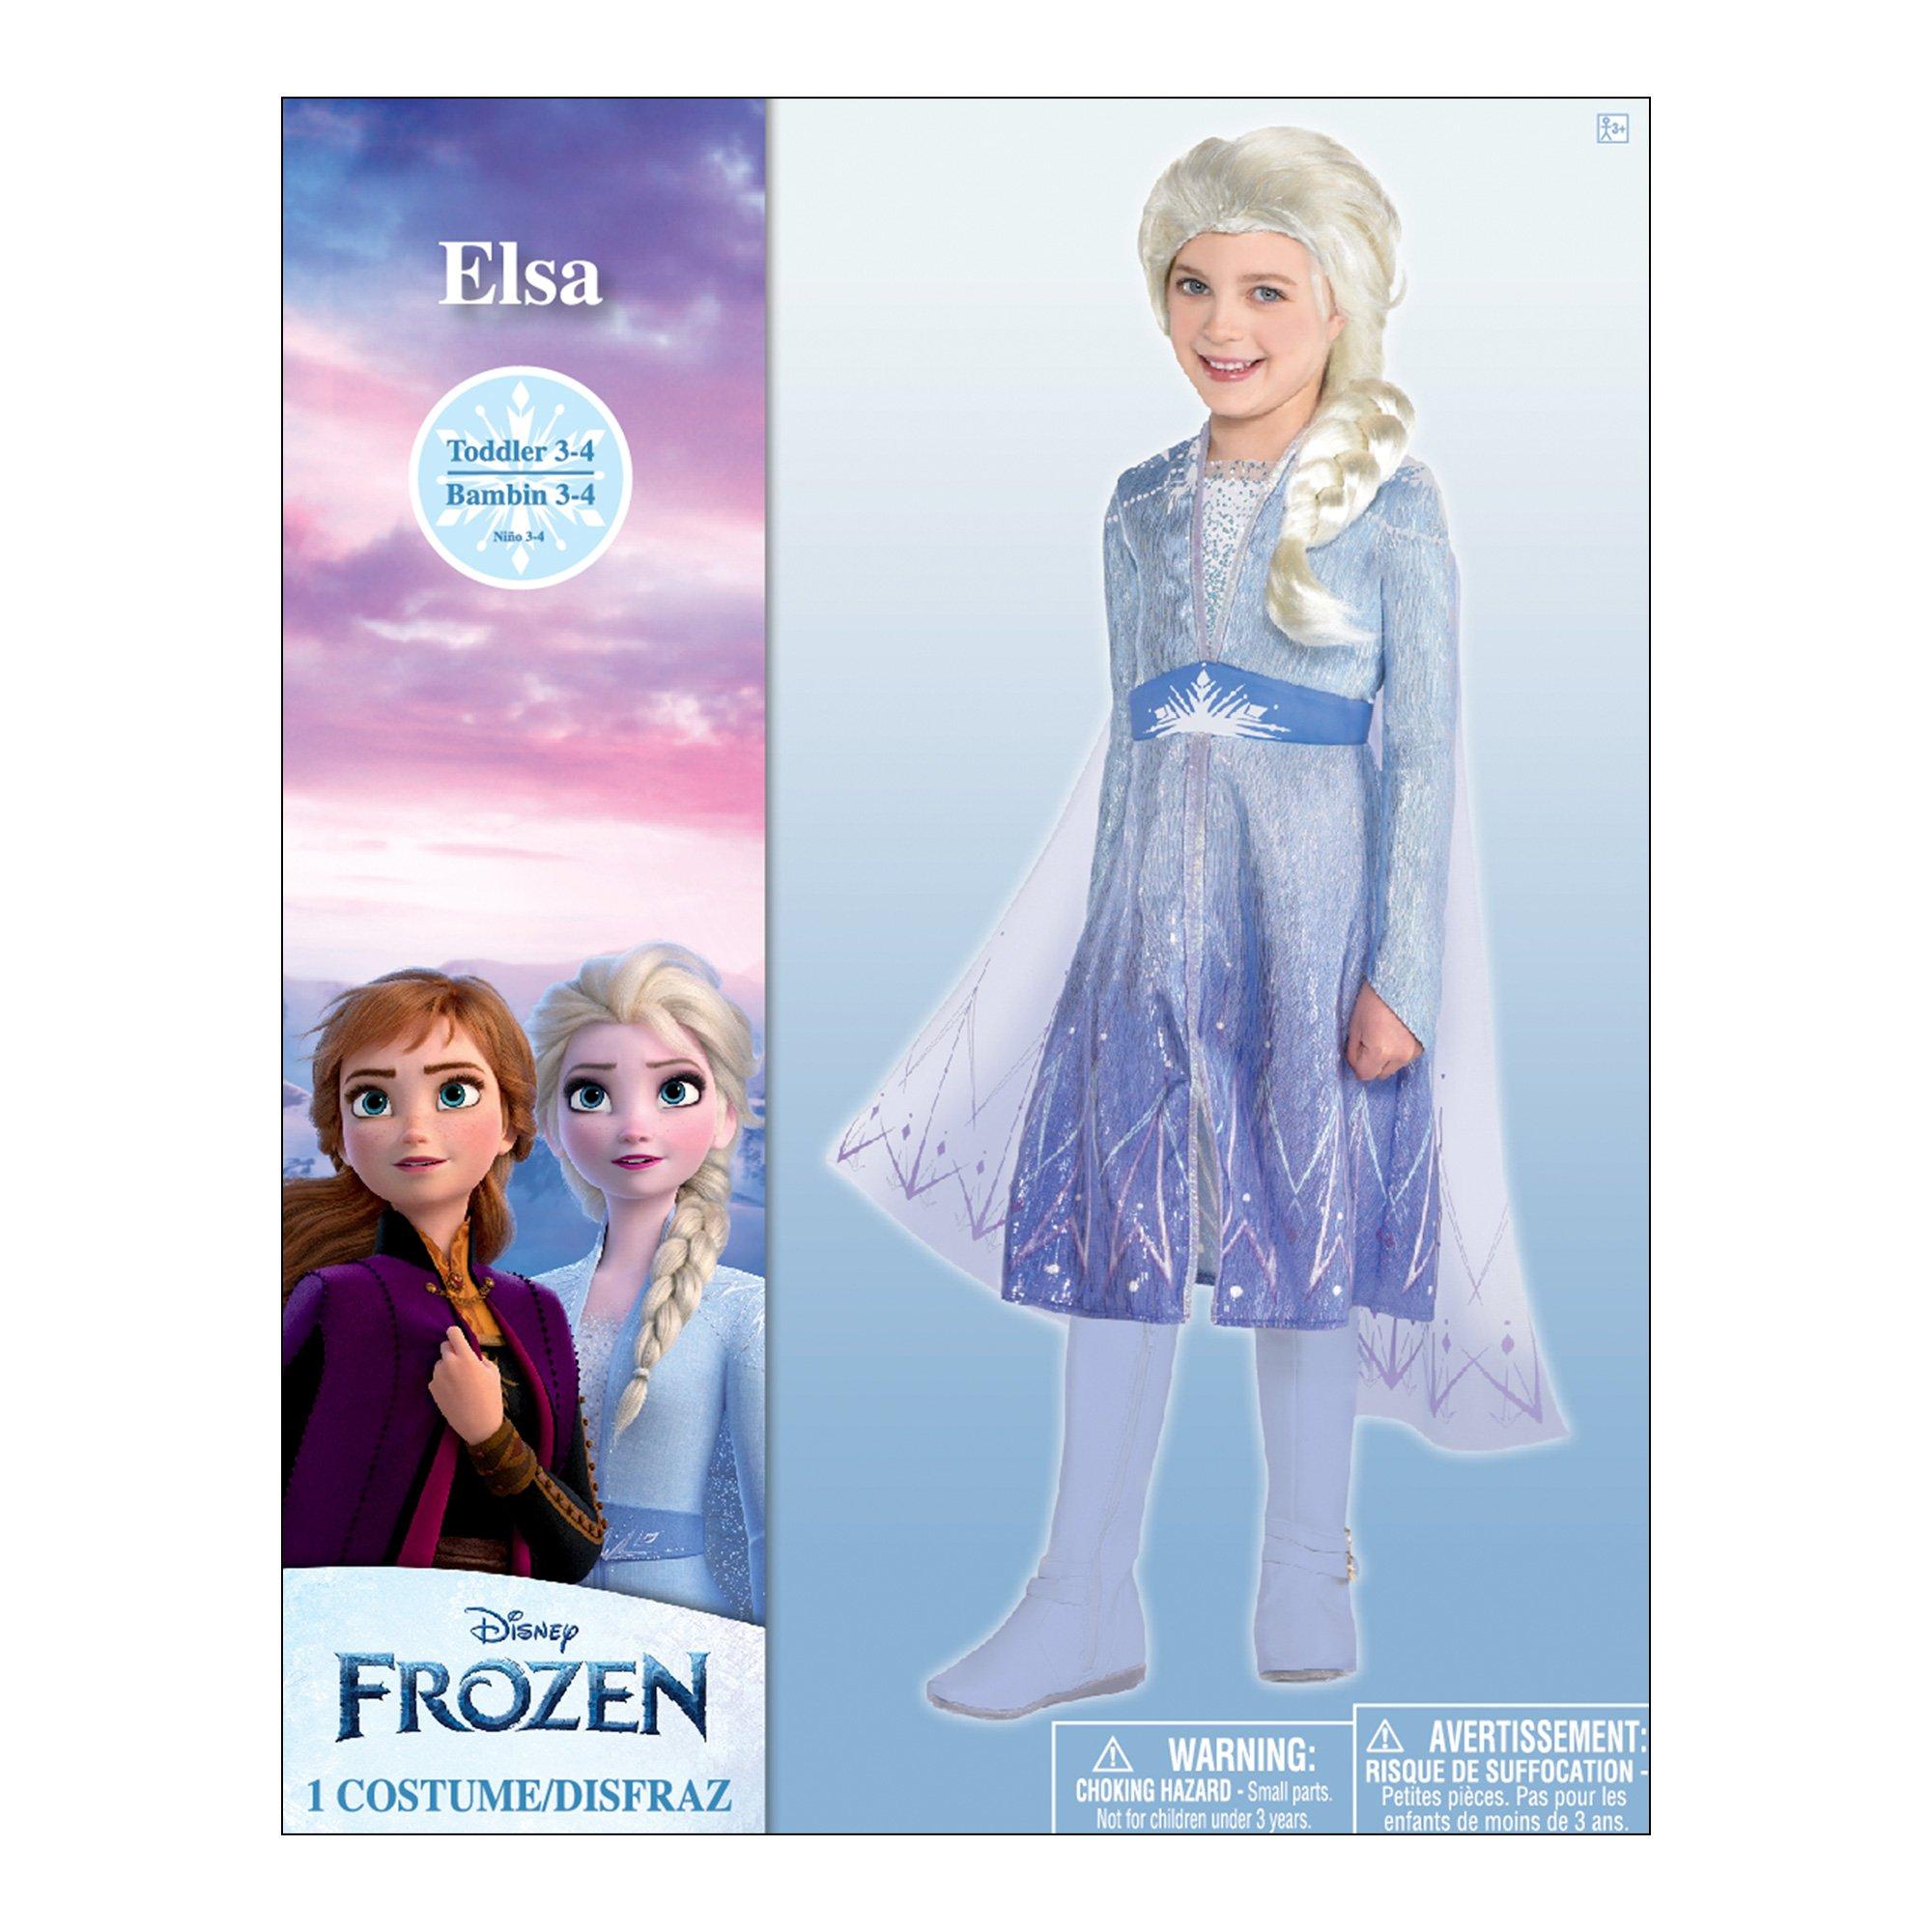 Kids' Act 2 Elsa Costume - Frozen 2